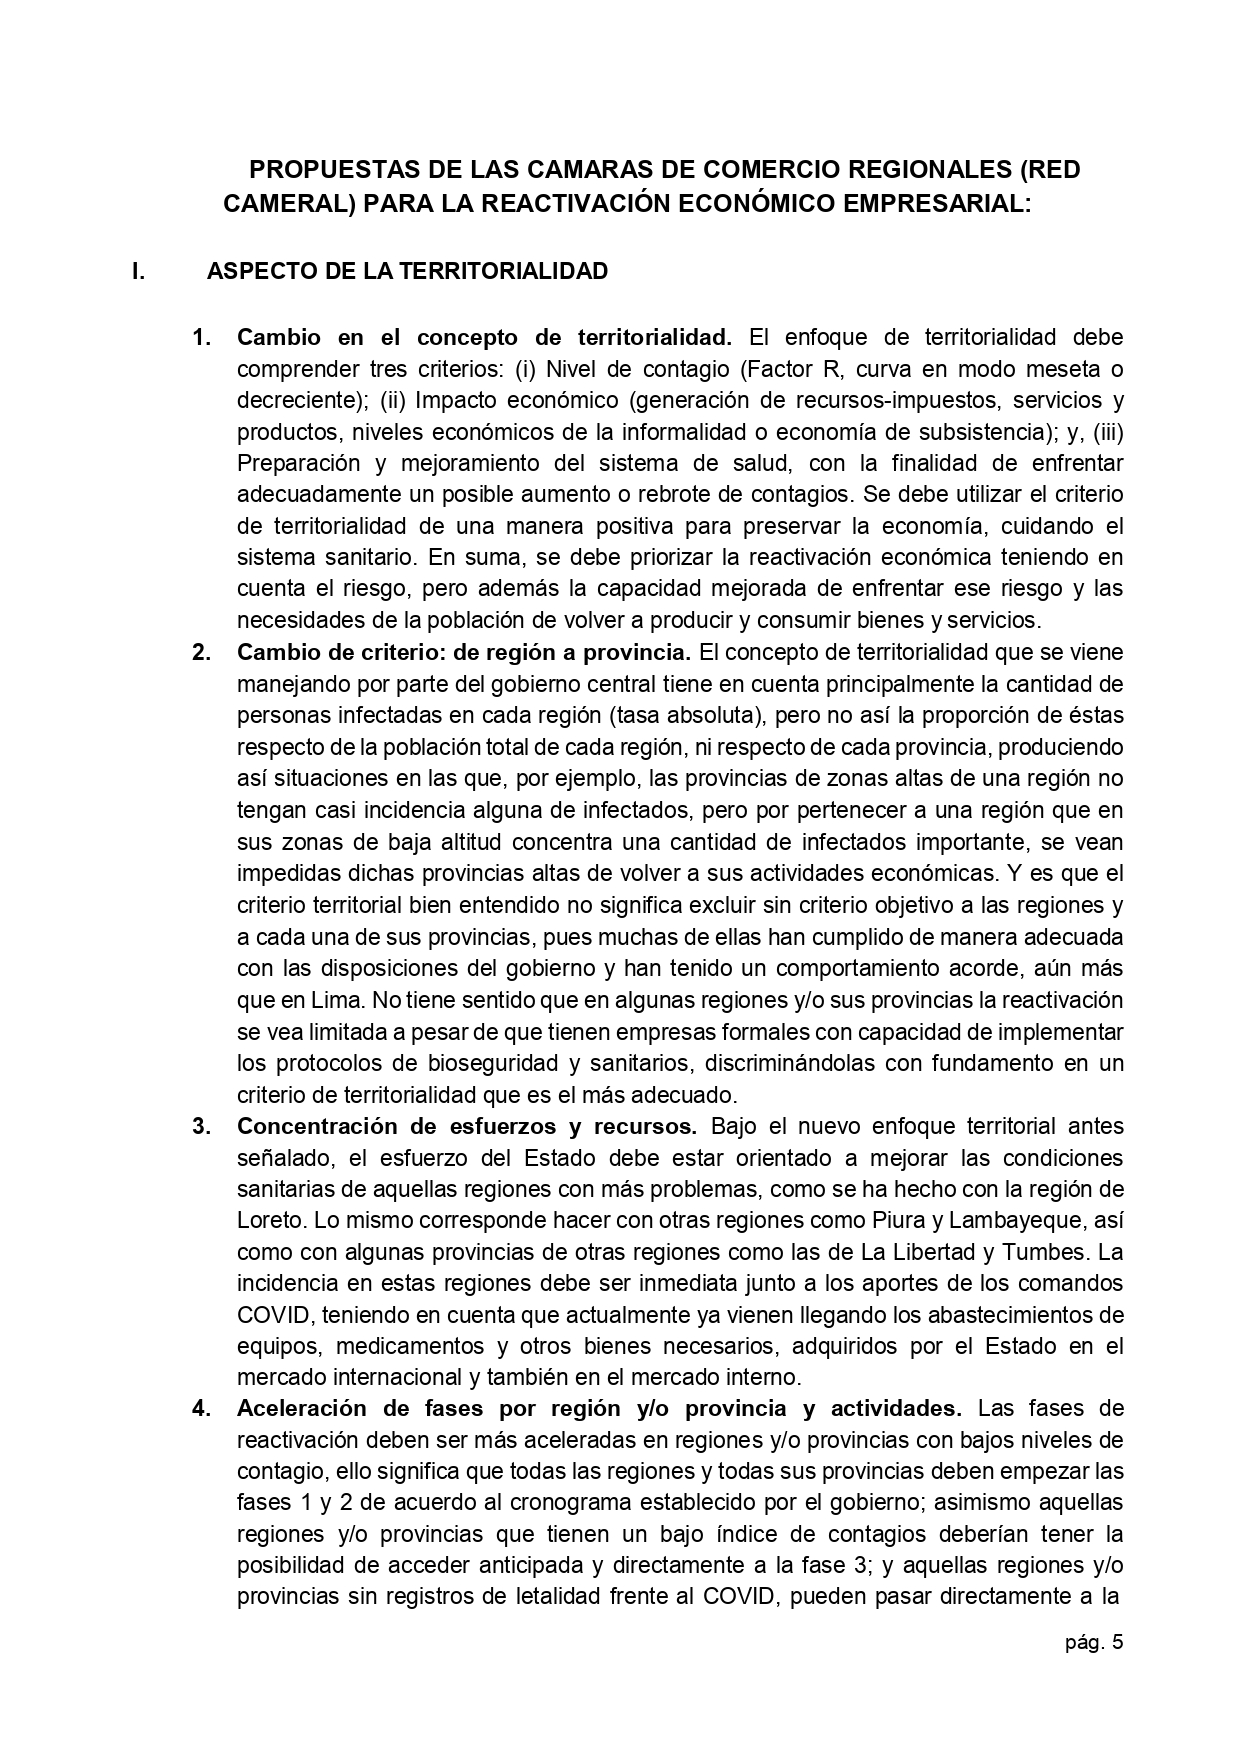 01.06.2020 Carta propuestas de cámaras para la reactivación económica  Presidencia page 0005